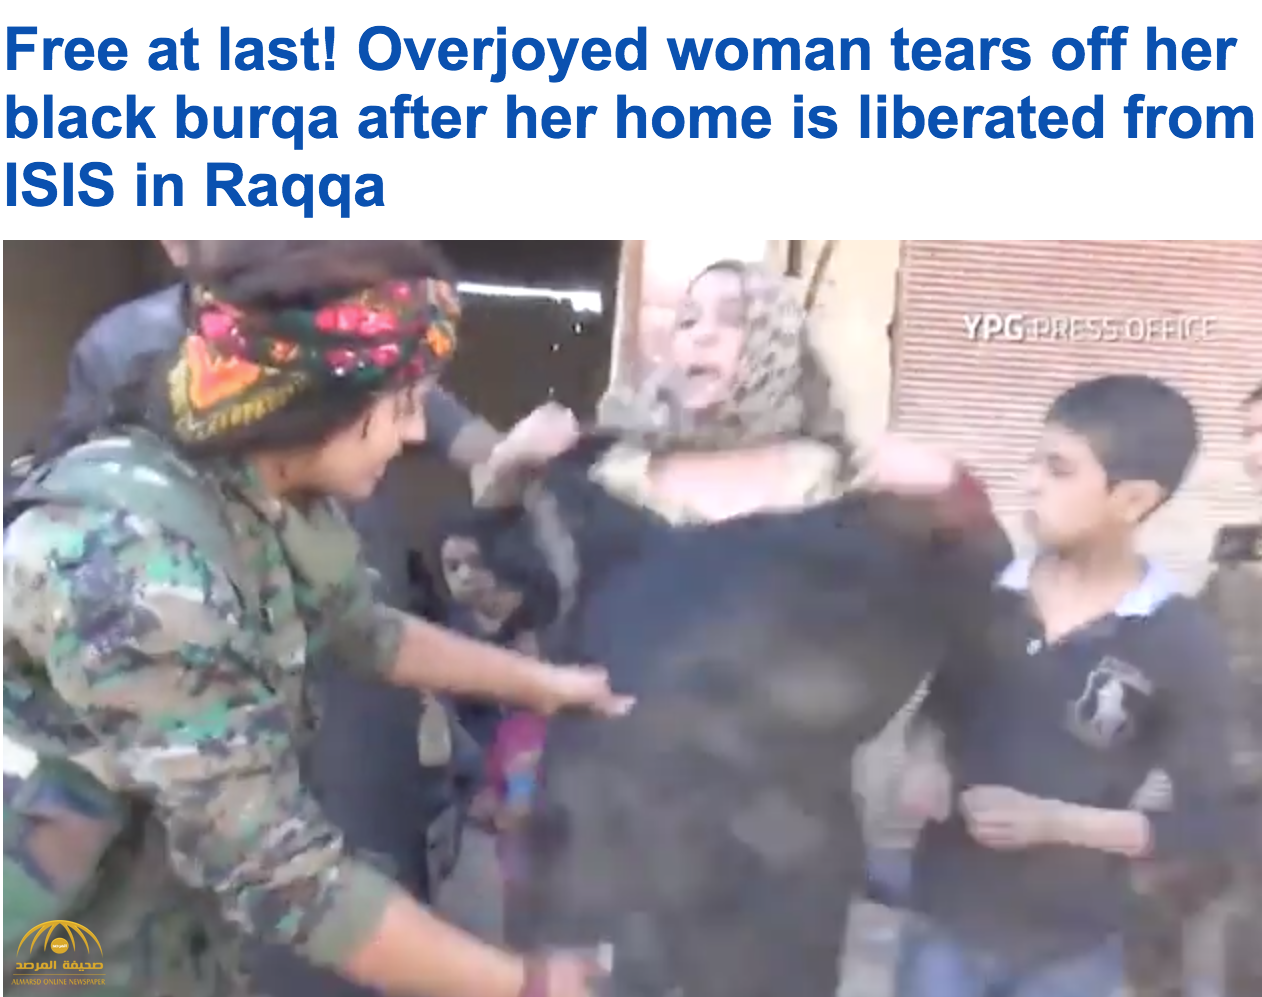 شاهد : امرأة سورية تمزق ثيابها وتقبل الجنود في الشارع بعد تحريرها من "داعش"